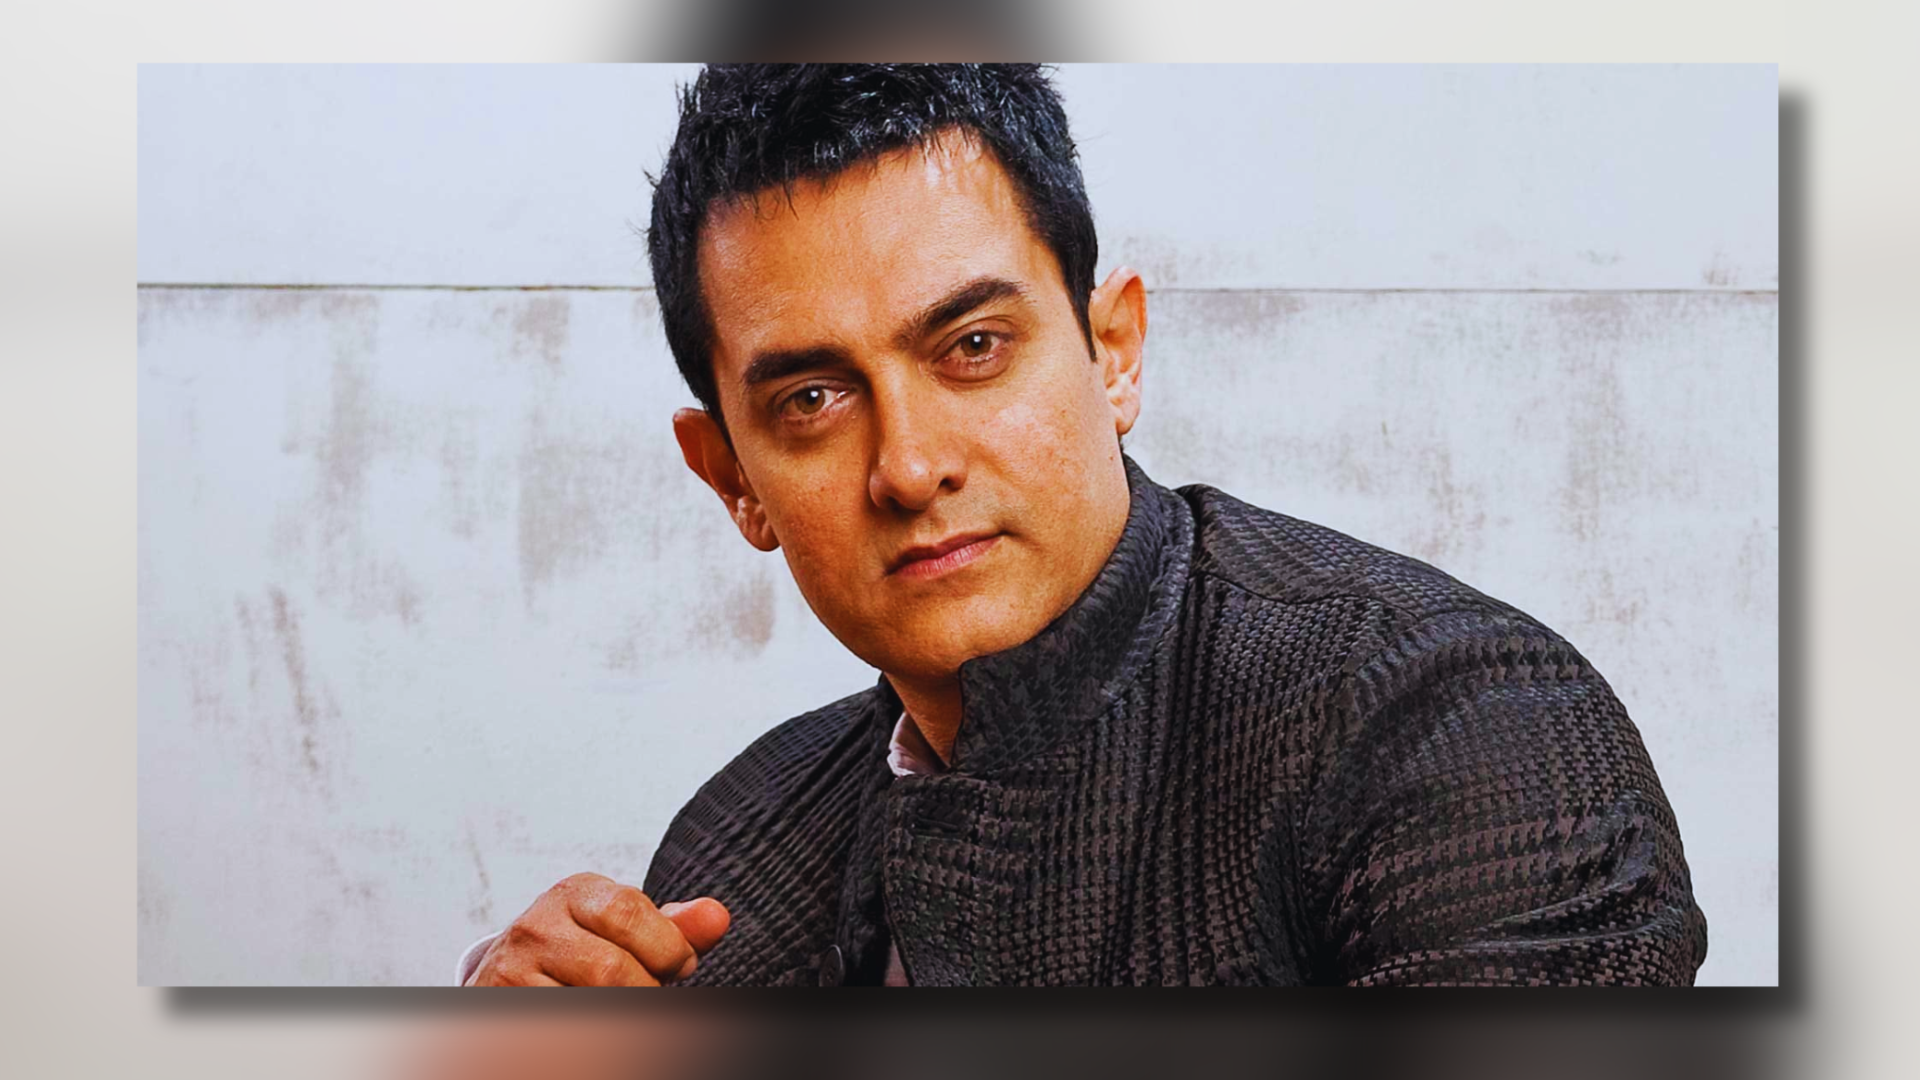 Aamir Khan Deepfake Video: Mumbai Police Takes Action